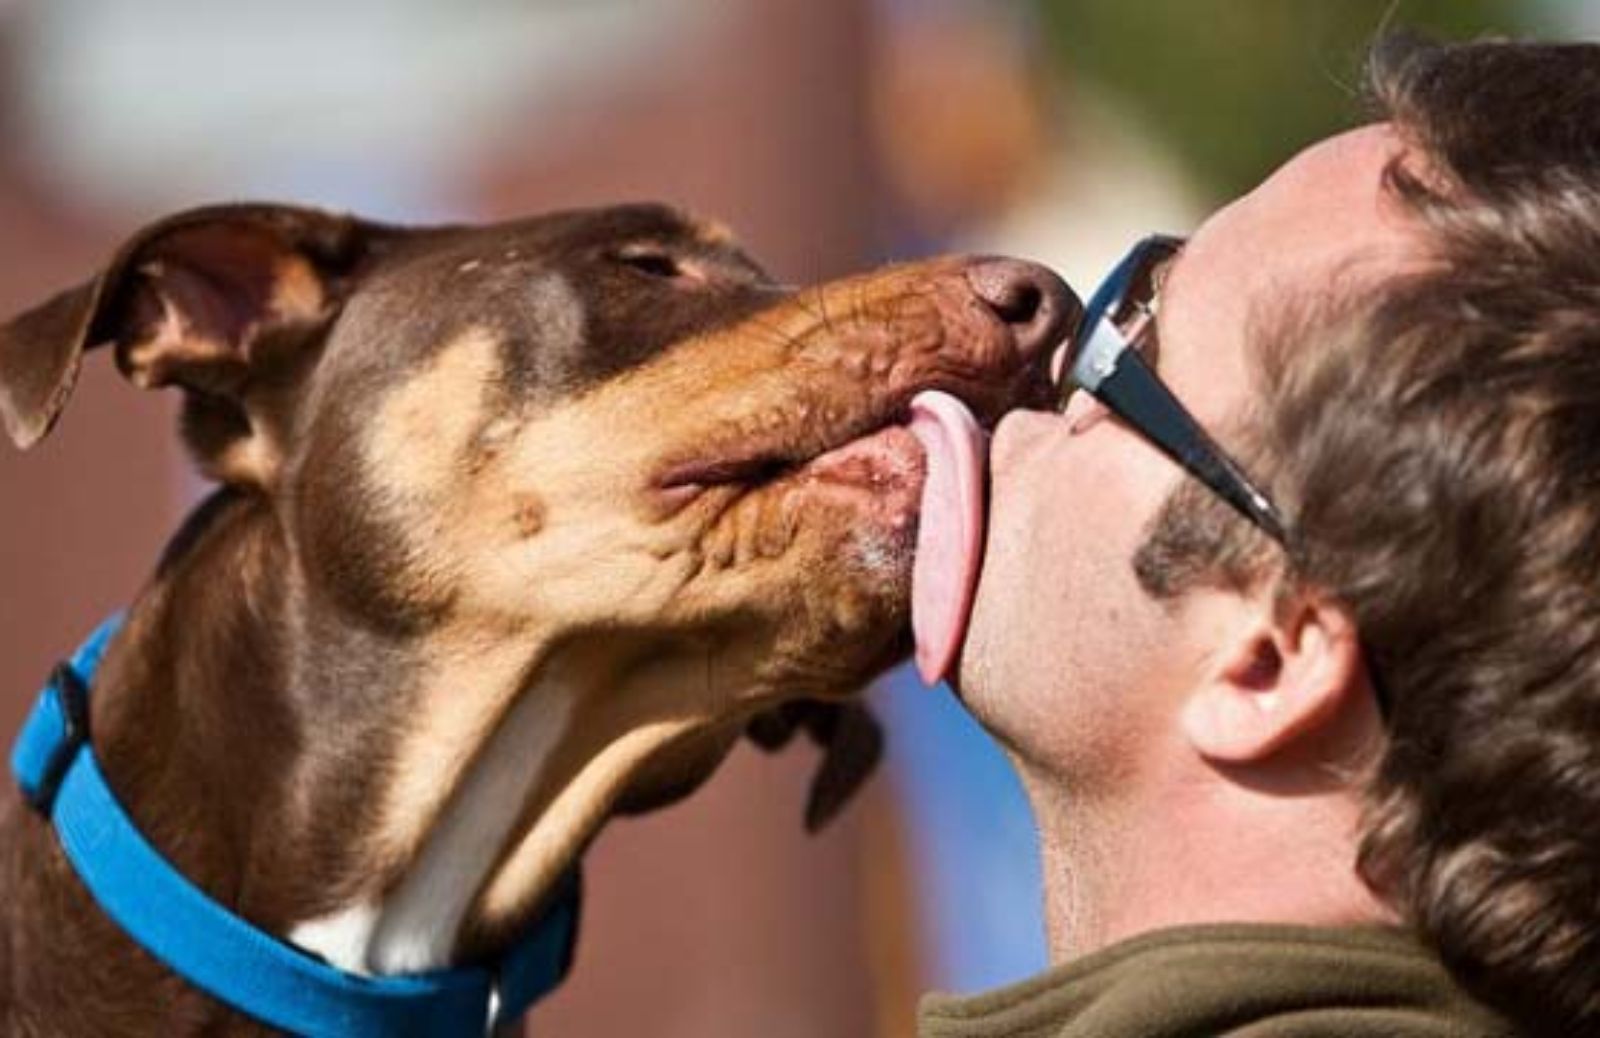  I 10 consigli per curare l’igiene orale del cane